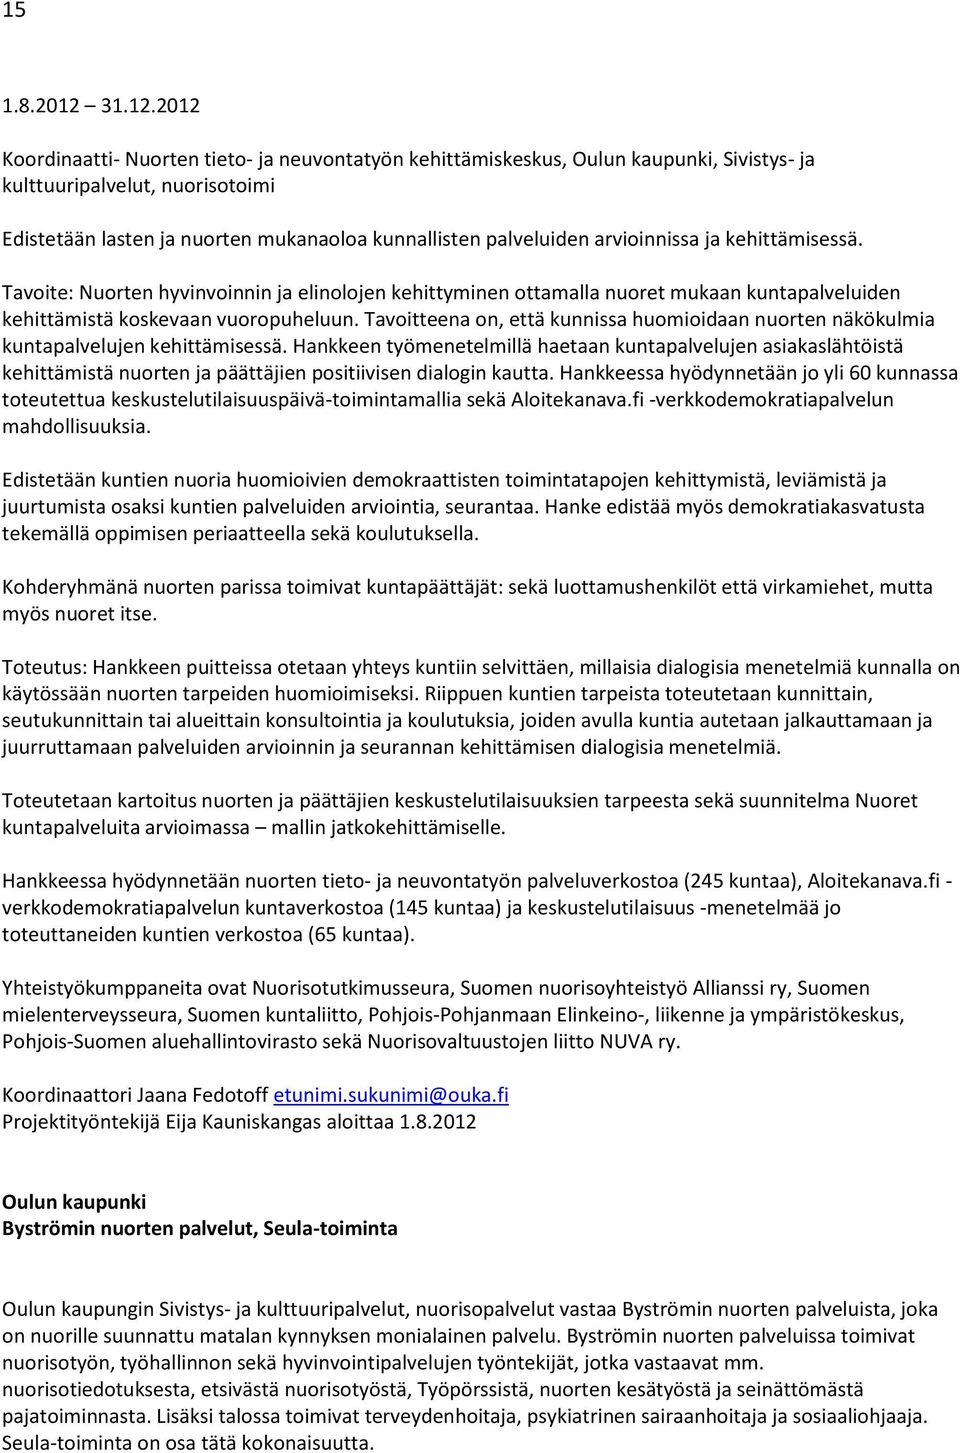 2012 Koordinaatti- Nuorten tieto- ja neuvontatyön kehittämiskeskus, Oulun kaupunki, Sivistys- ja kulttuuripalvelut, nuorisotoimi Edistetään lasten ja nuorten mukanaoloa kunnallisten palveluiden